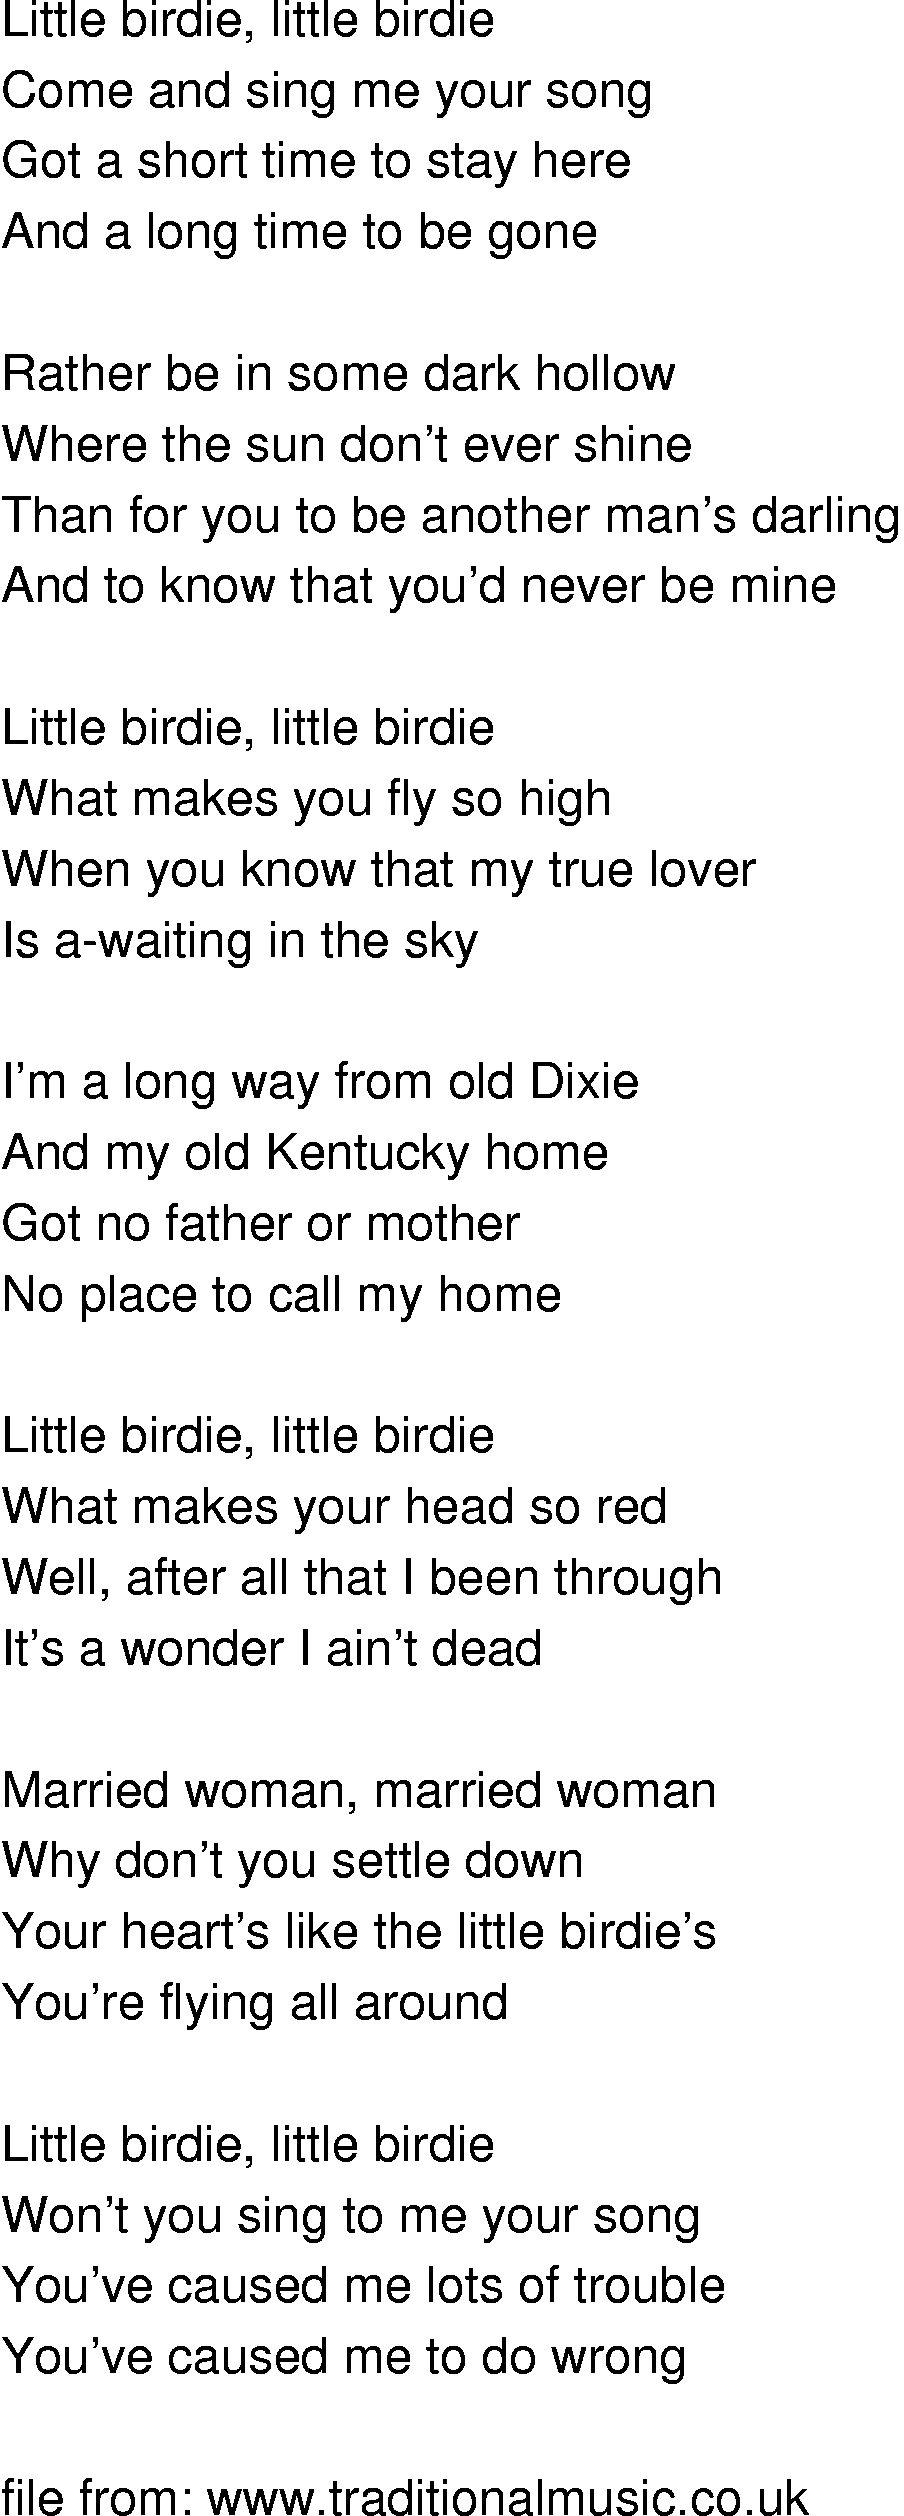 Old-Time (oldtimey) Song Lyrics - little birdie